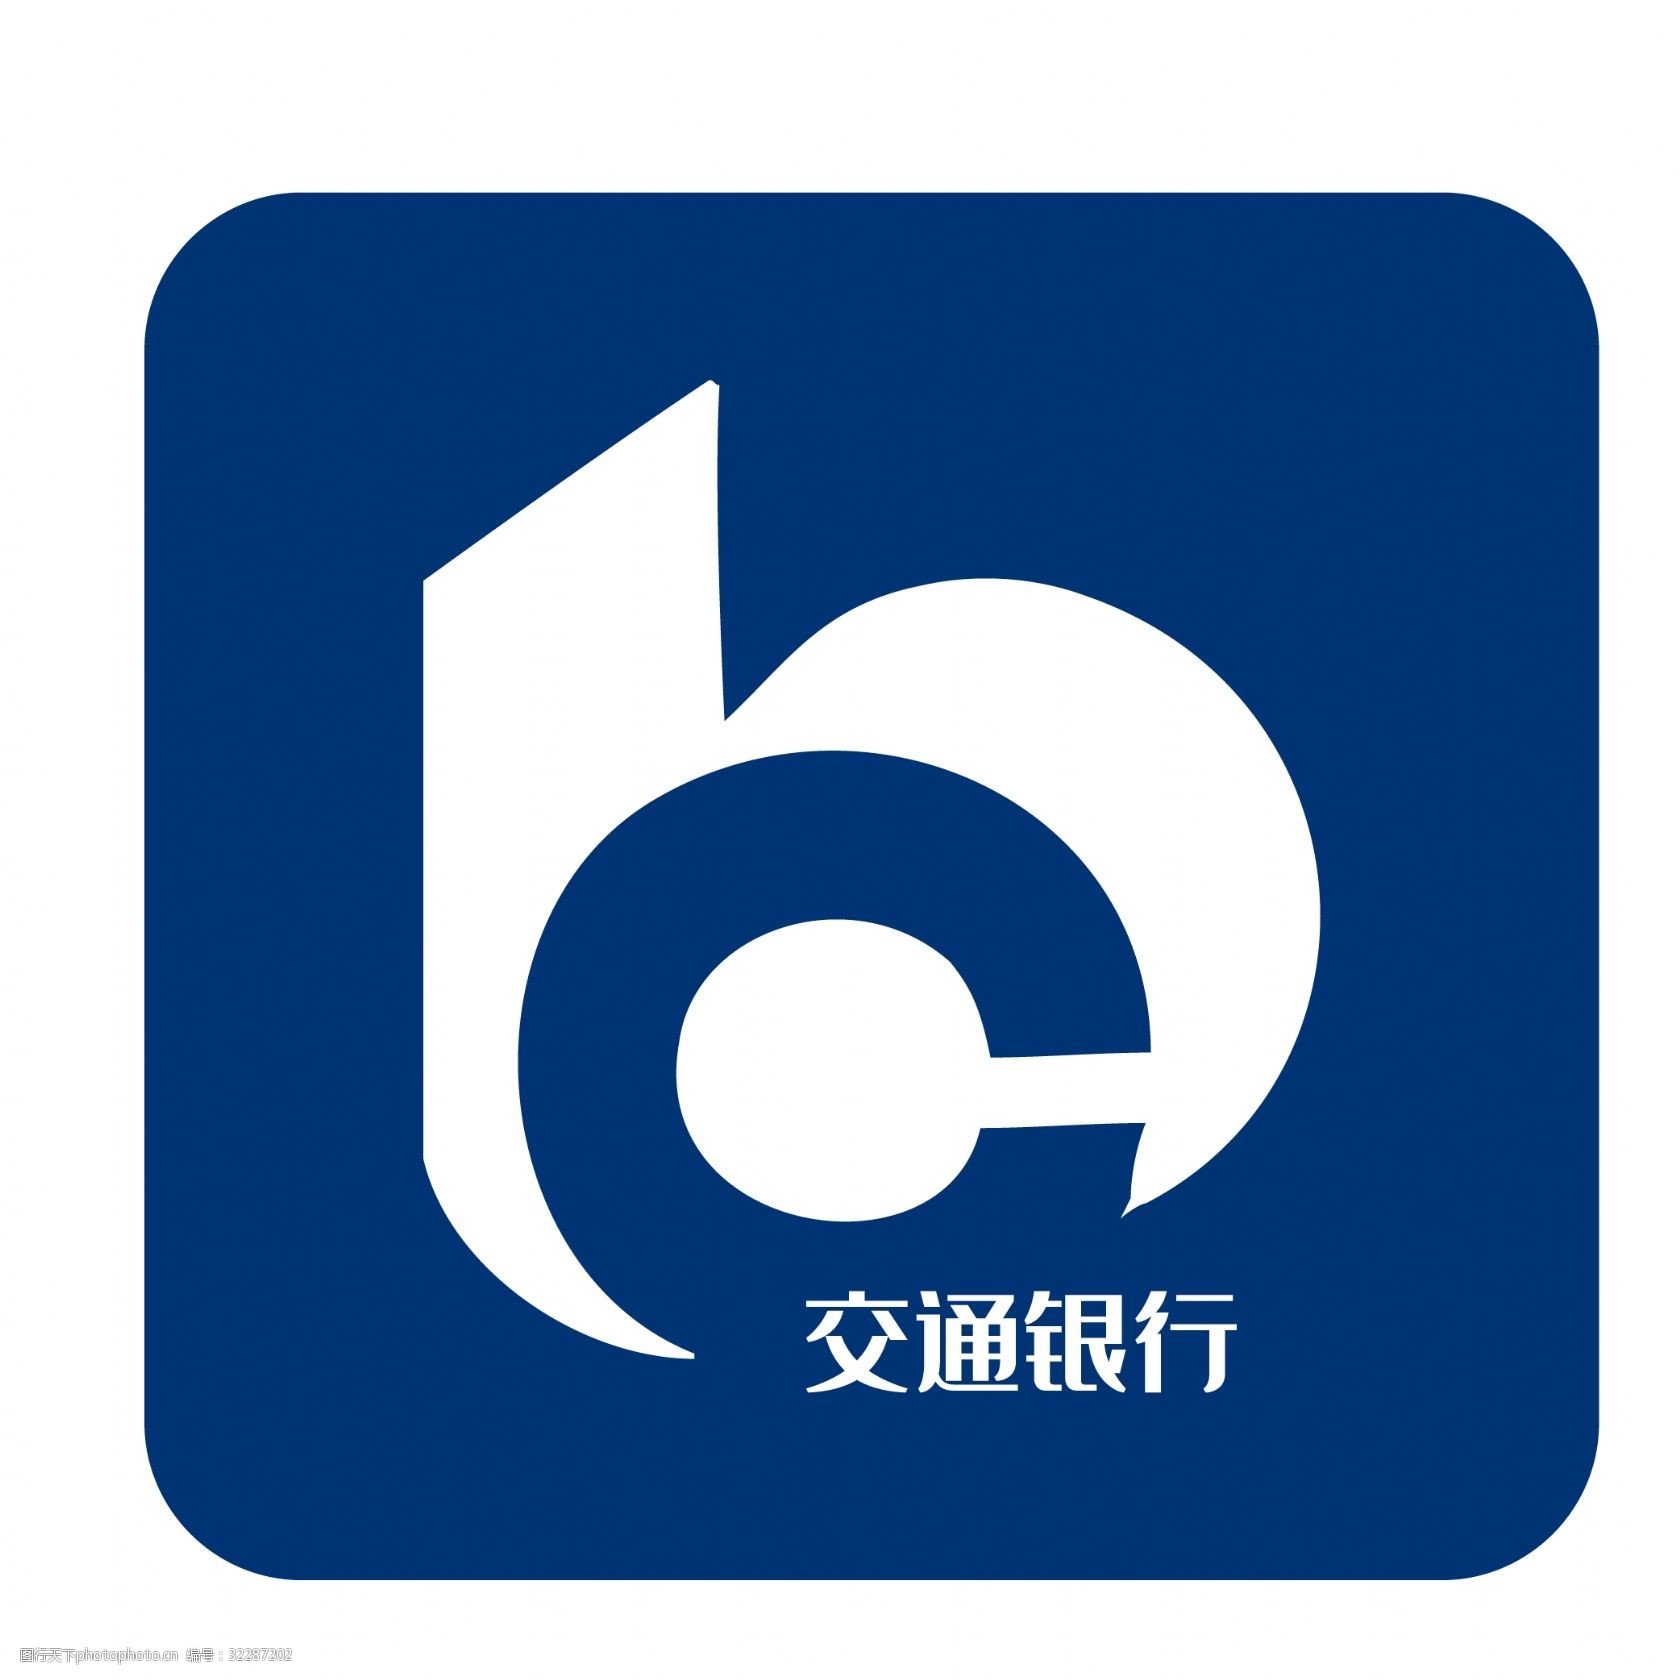 交行logo图片